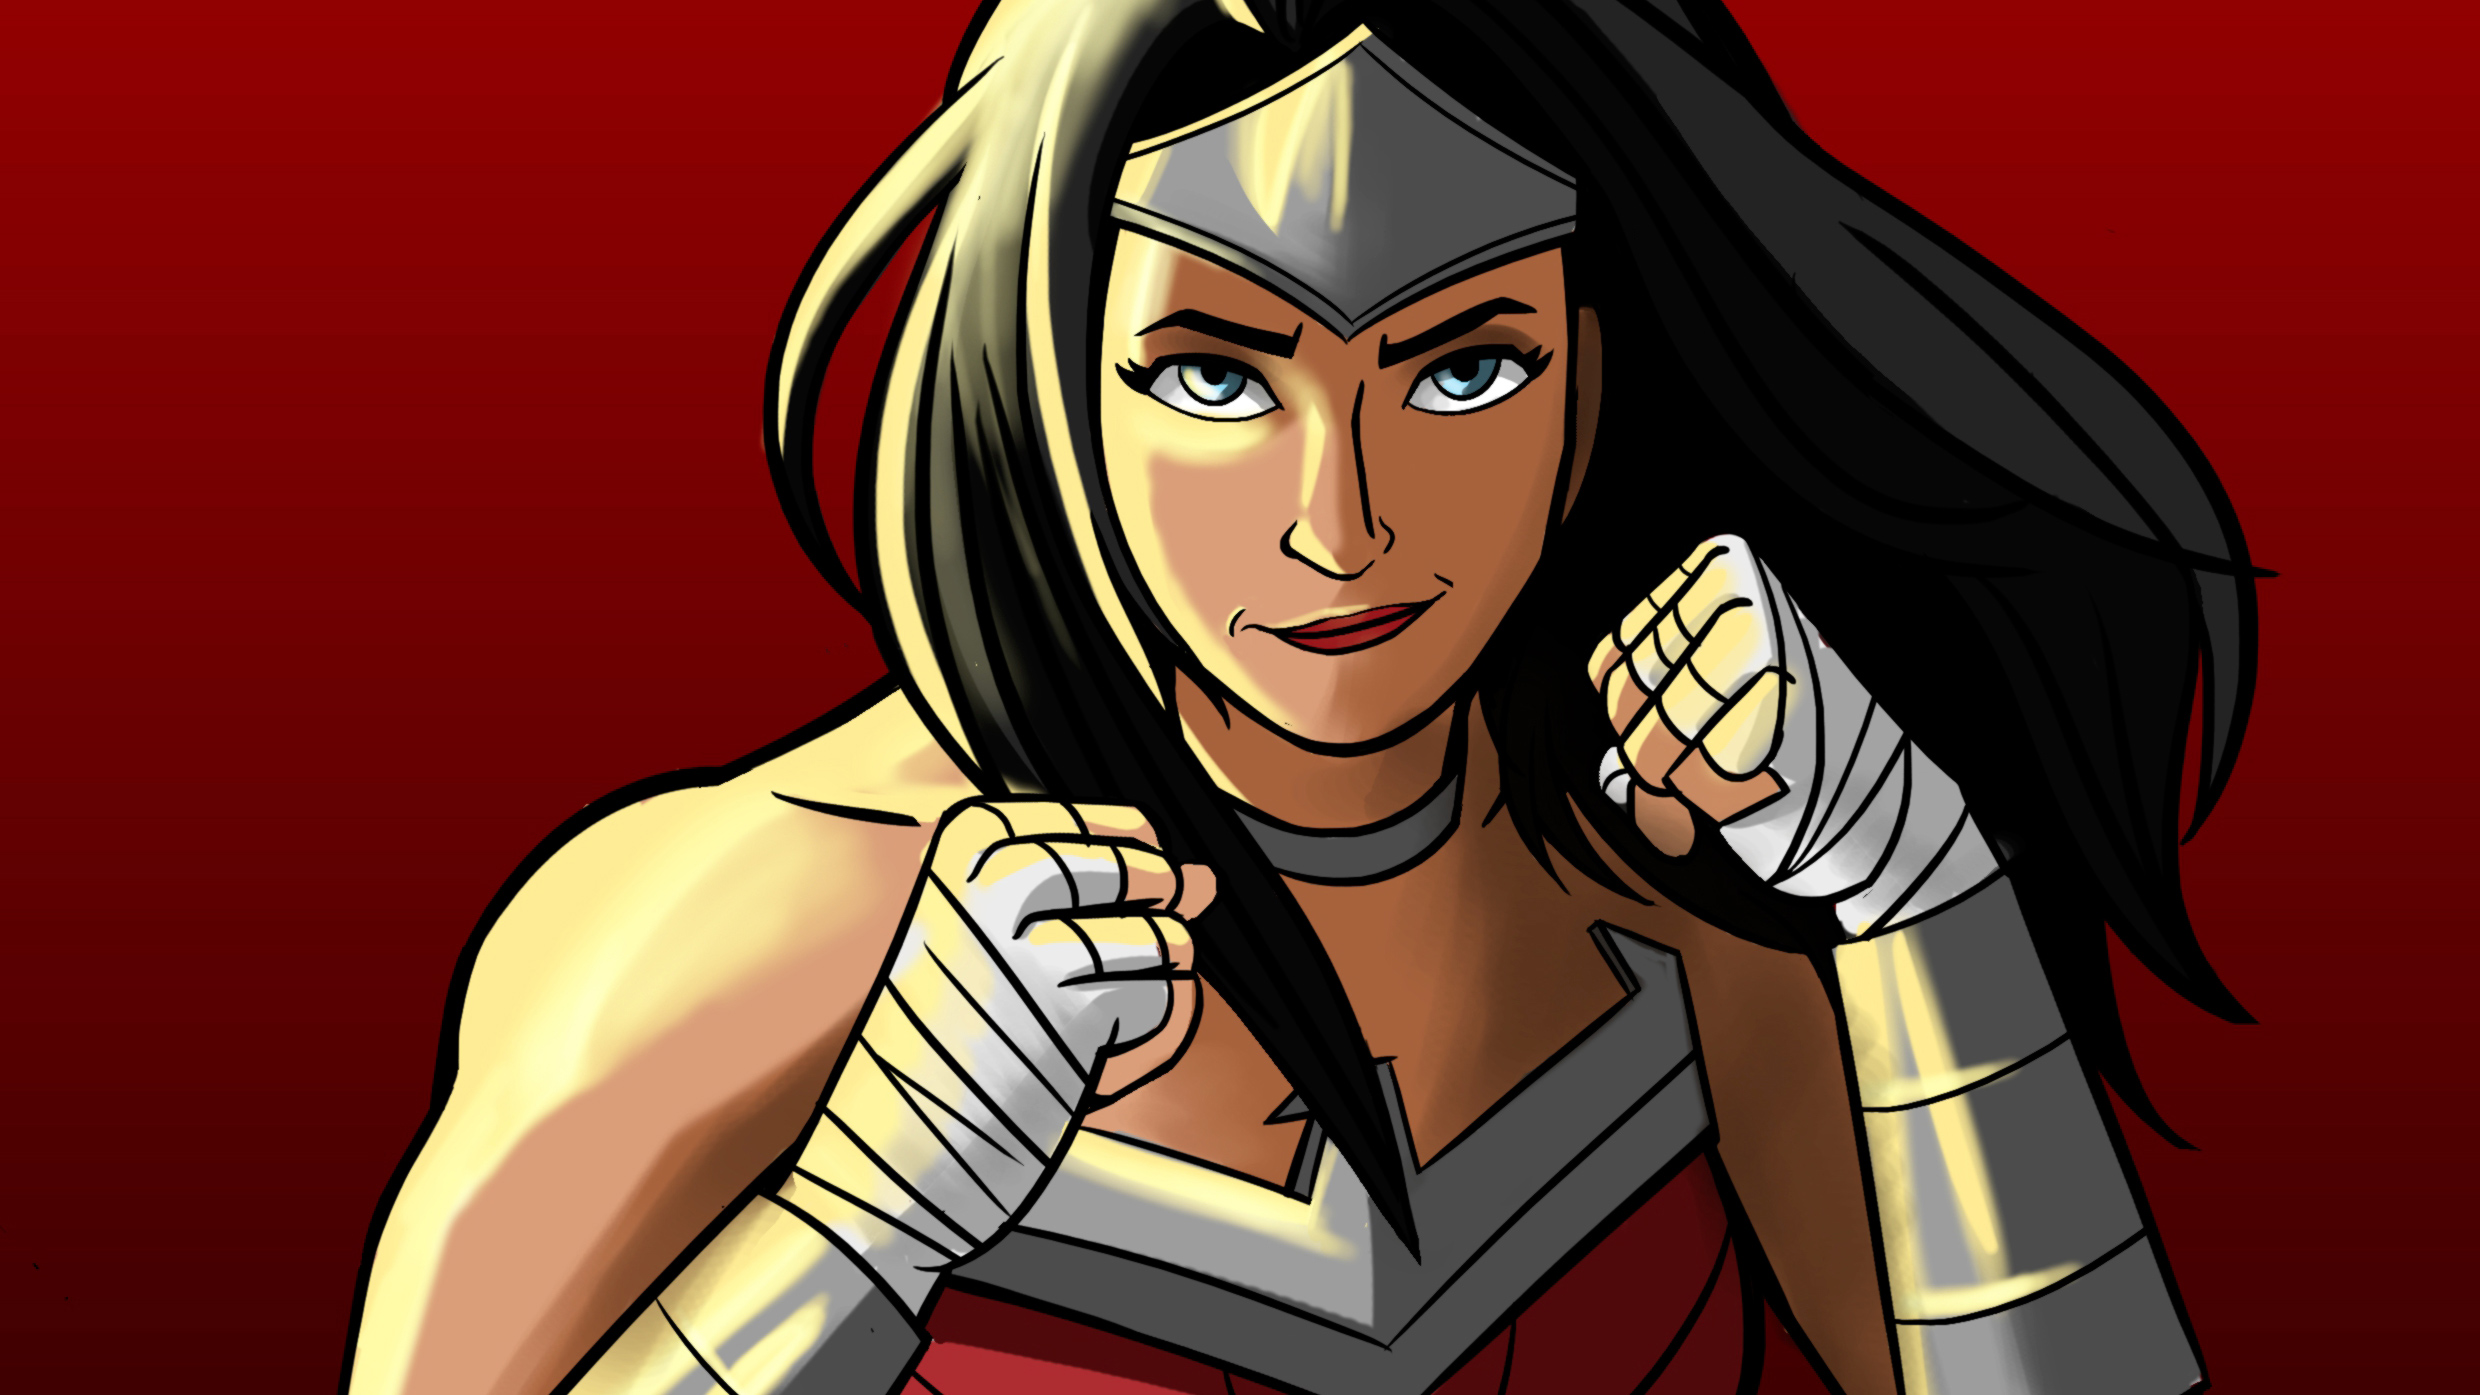 Wonder Woman Cartoon Artworks Hd Superheroes K Wallpapers Images